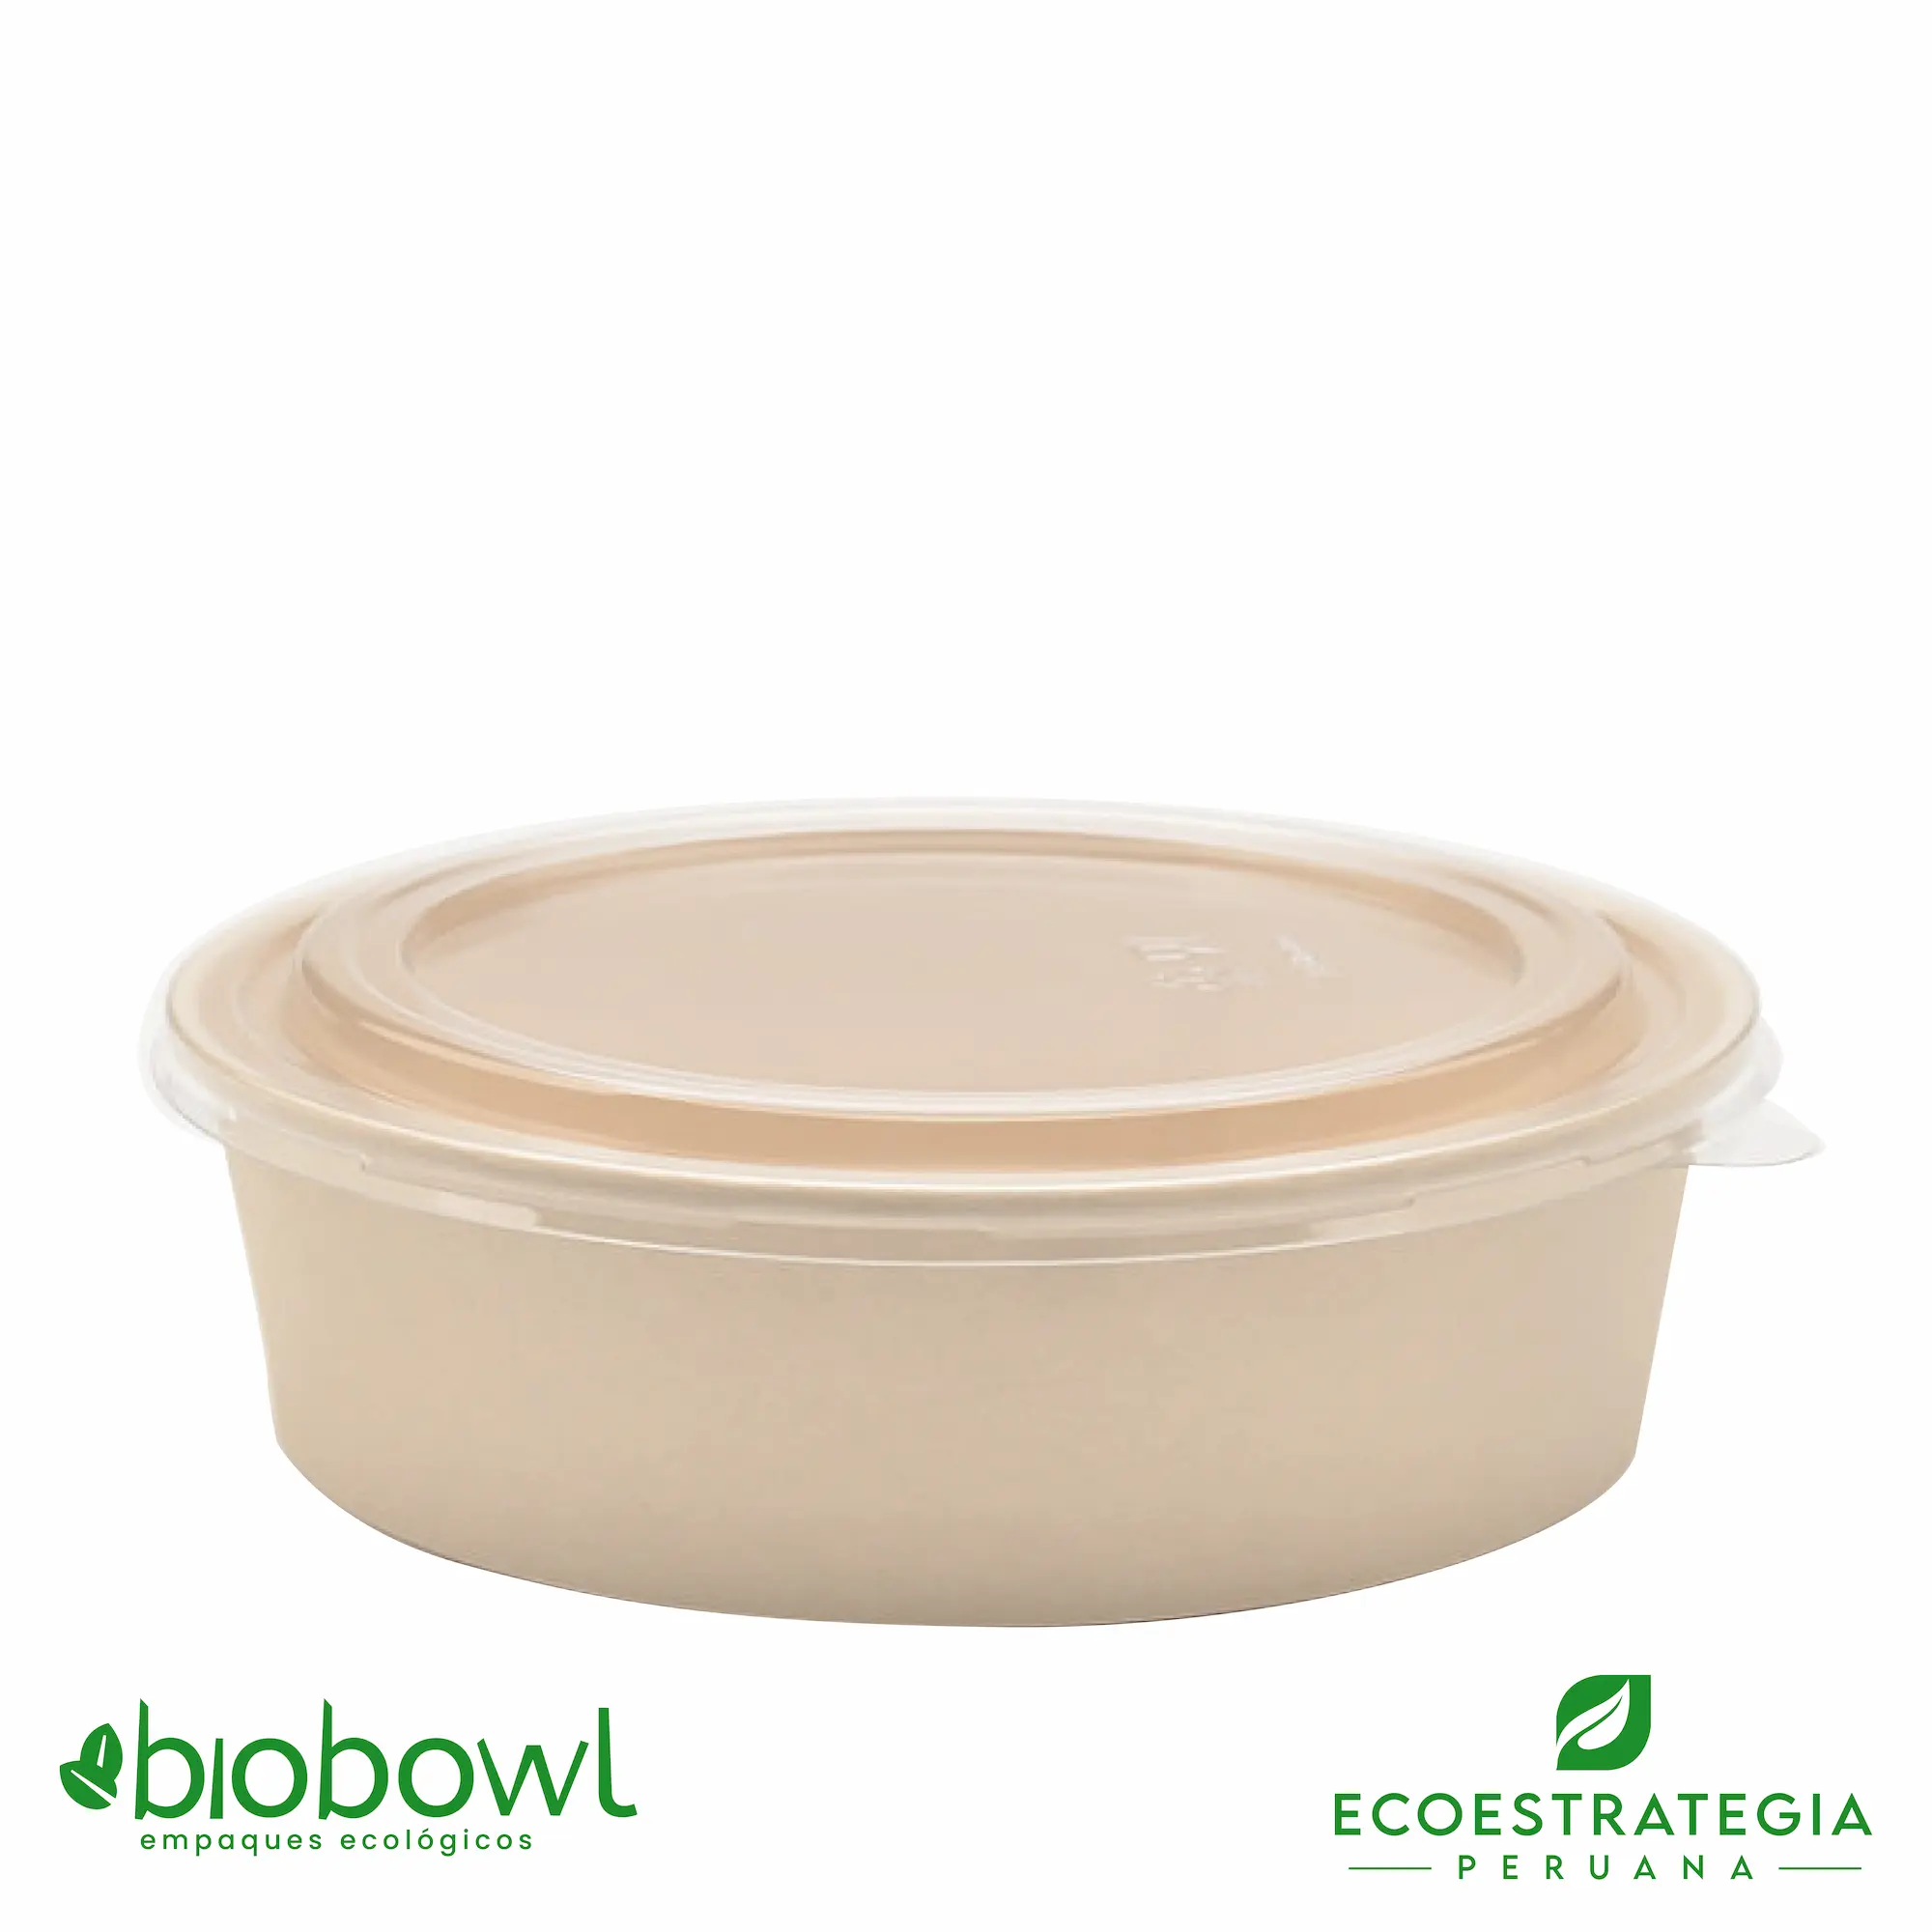 Este envase biodegradable es un bowl 750ml hecho de bambú. Envases descartables con gramaje ideal, cotiza tus vasos para helados, táper para sopa, bowls salad